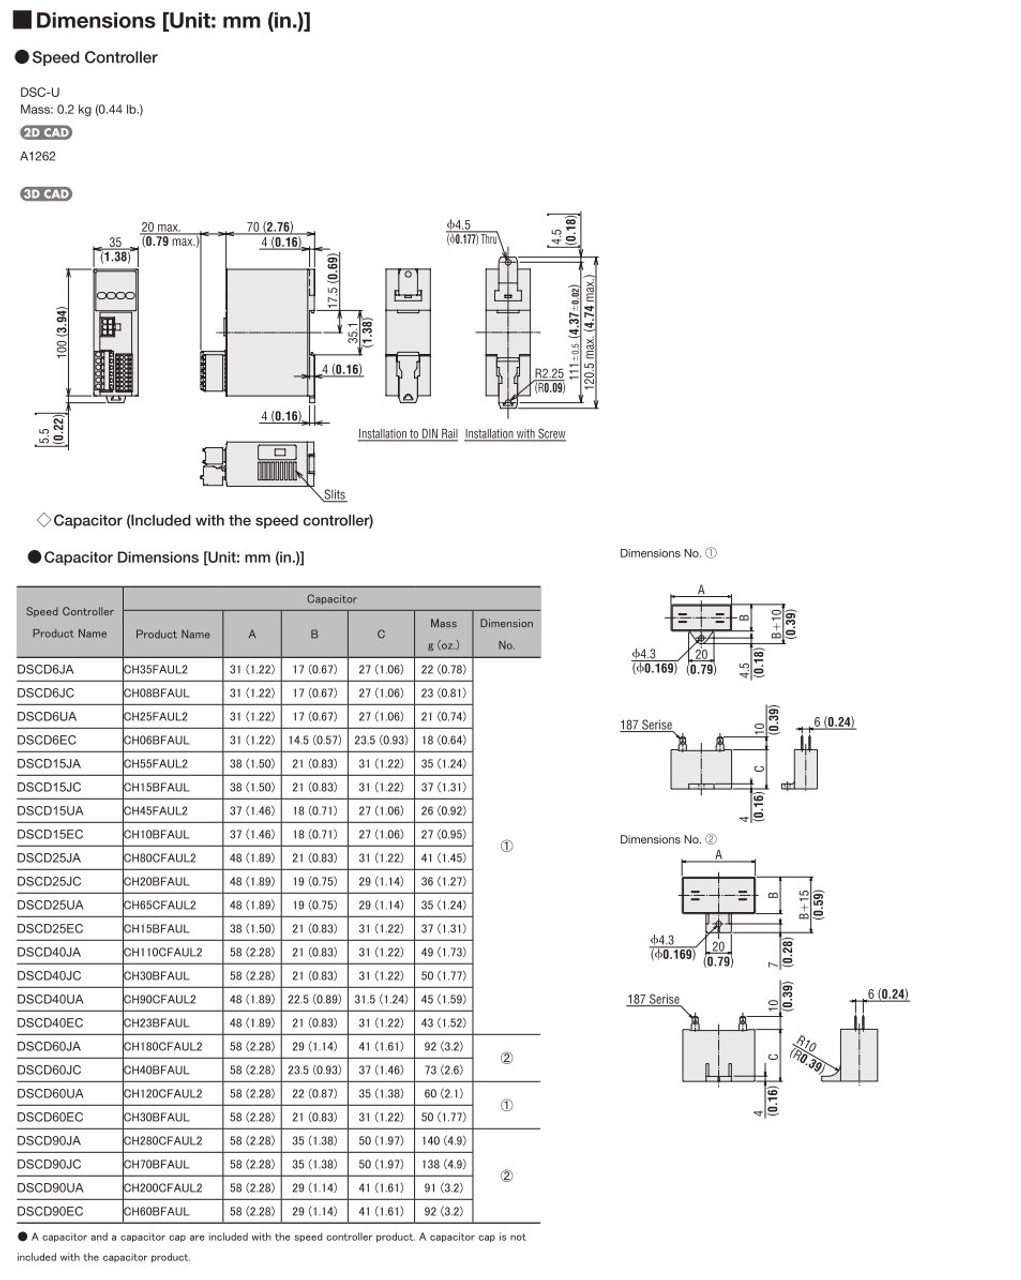 SCM315EC-60A / DSCD15EC - Dimensions